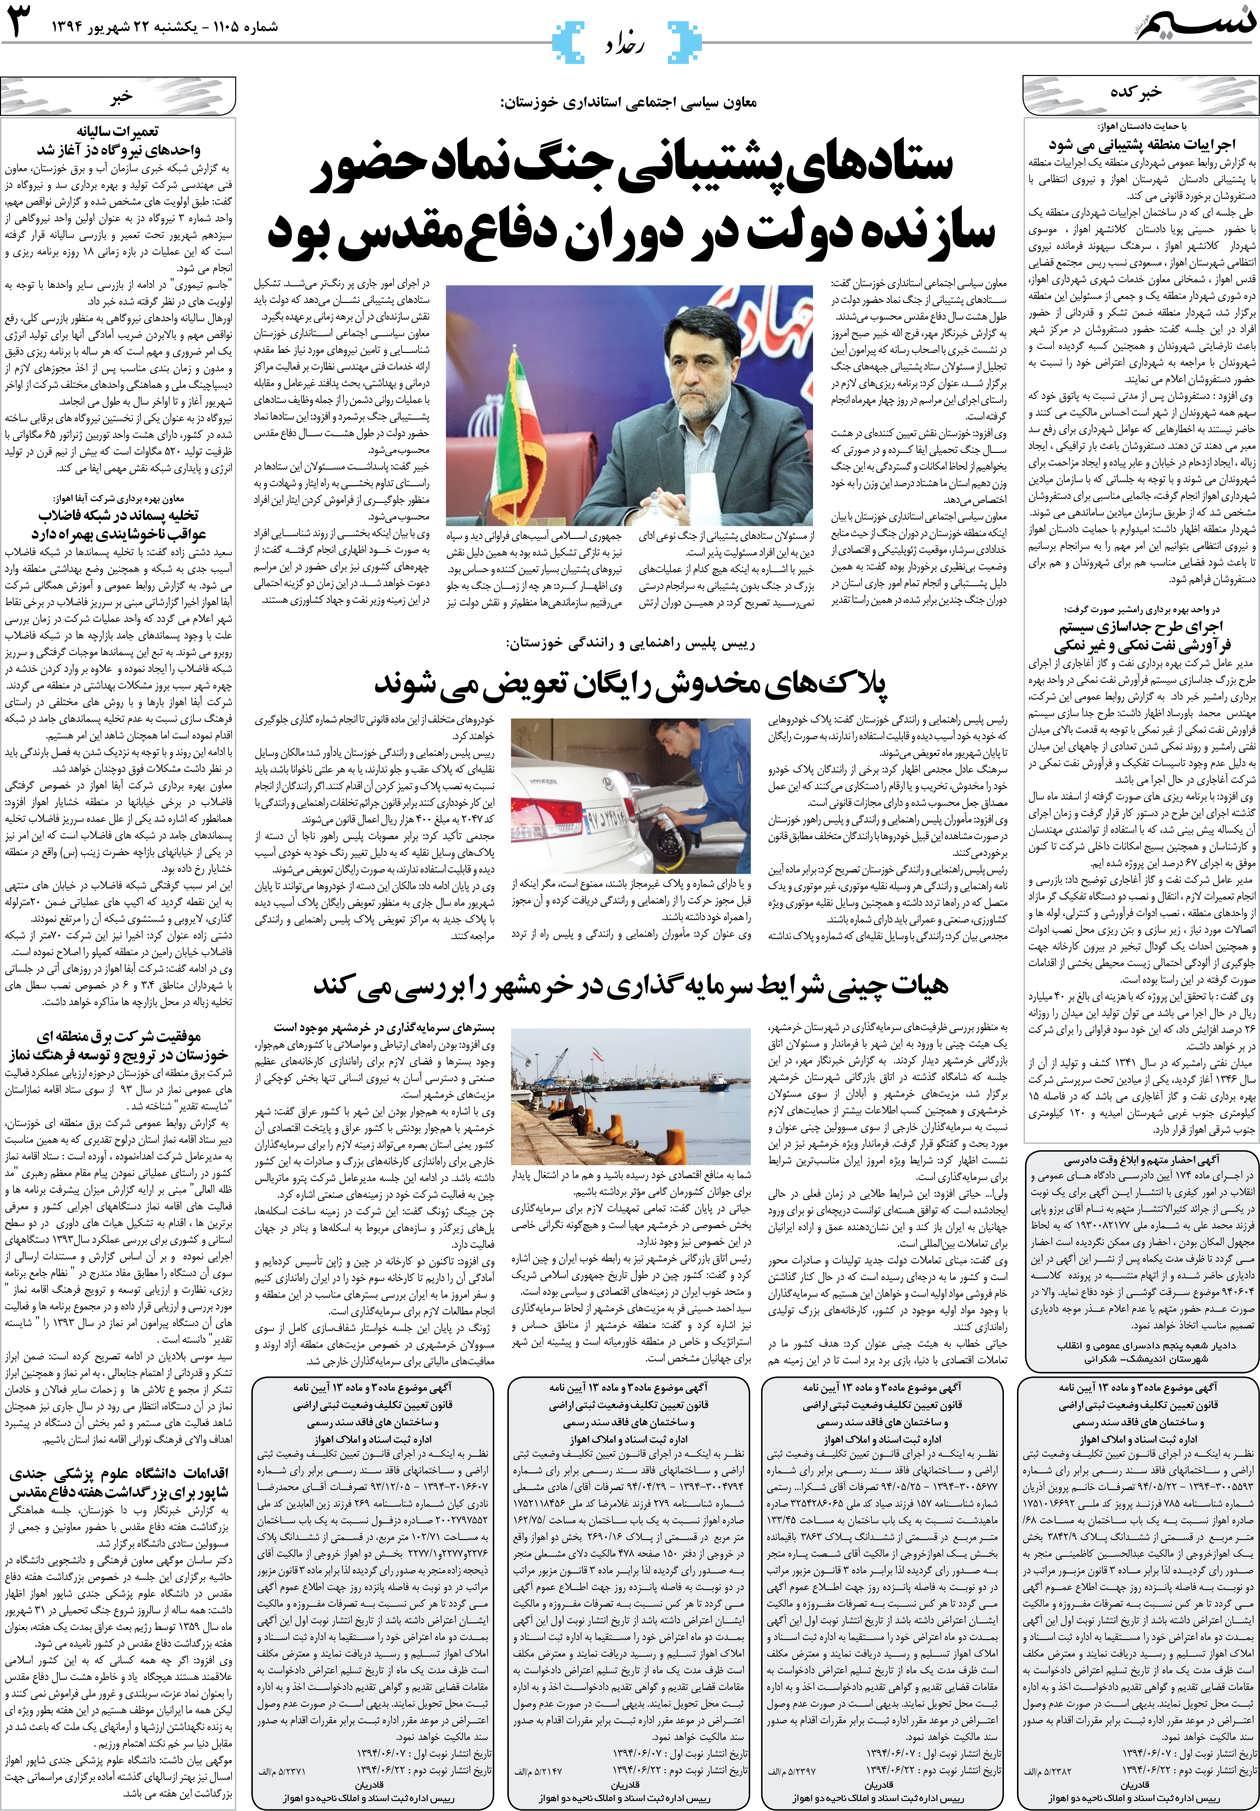 صفحه رخداد روزنامه نسیم شماره 1105